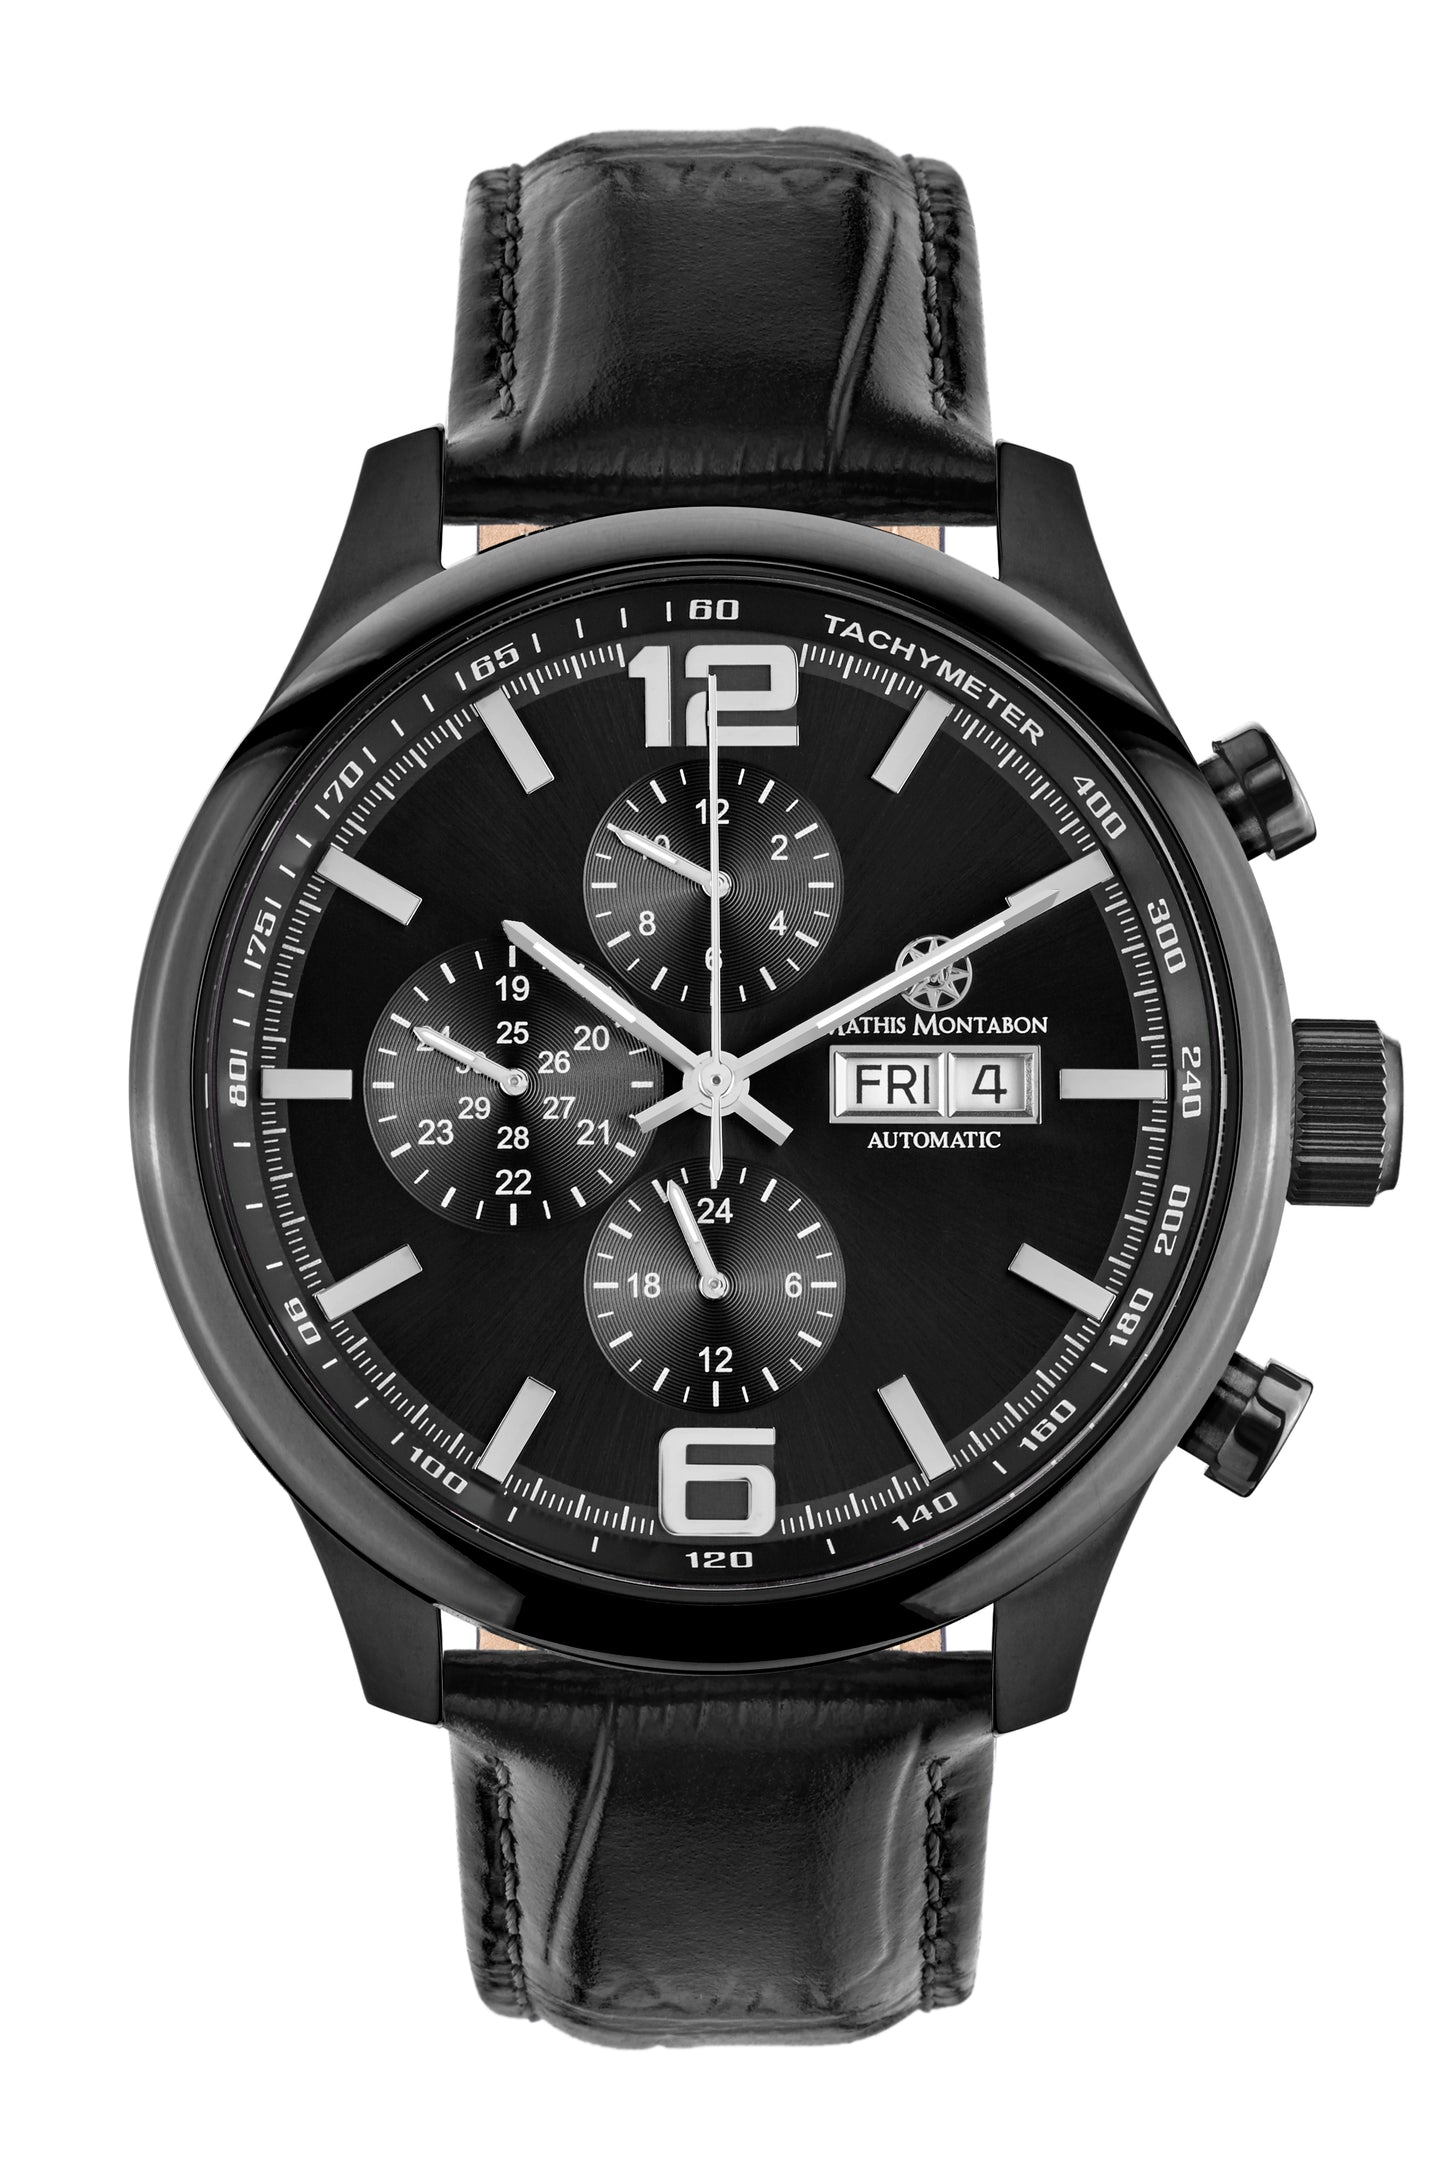 Automatic watches — Grande Date II — Mathis Montabon — IP schwarz